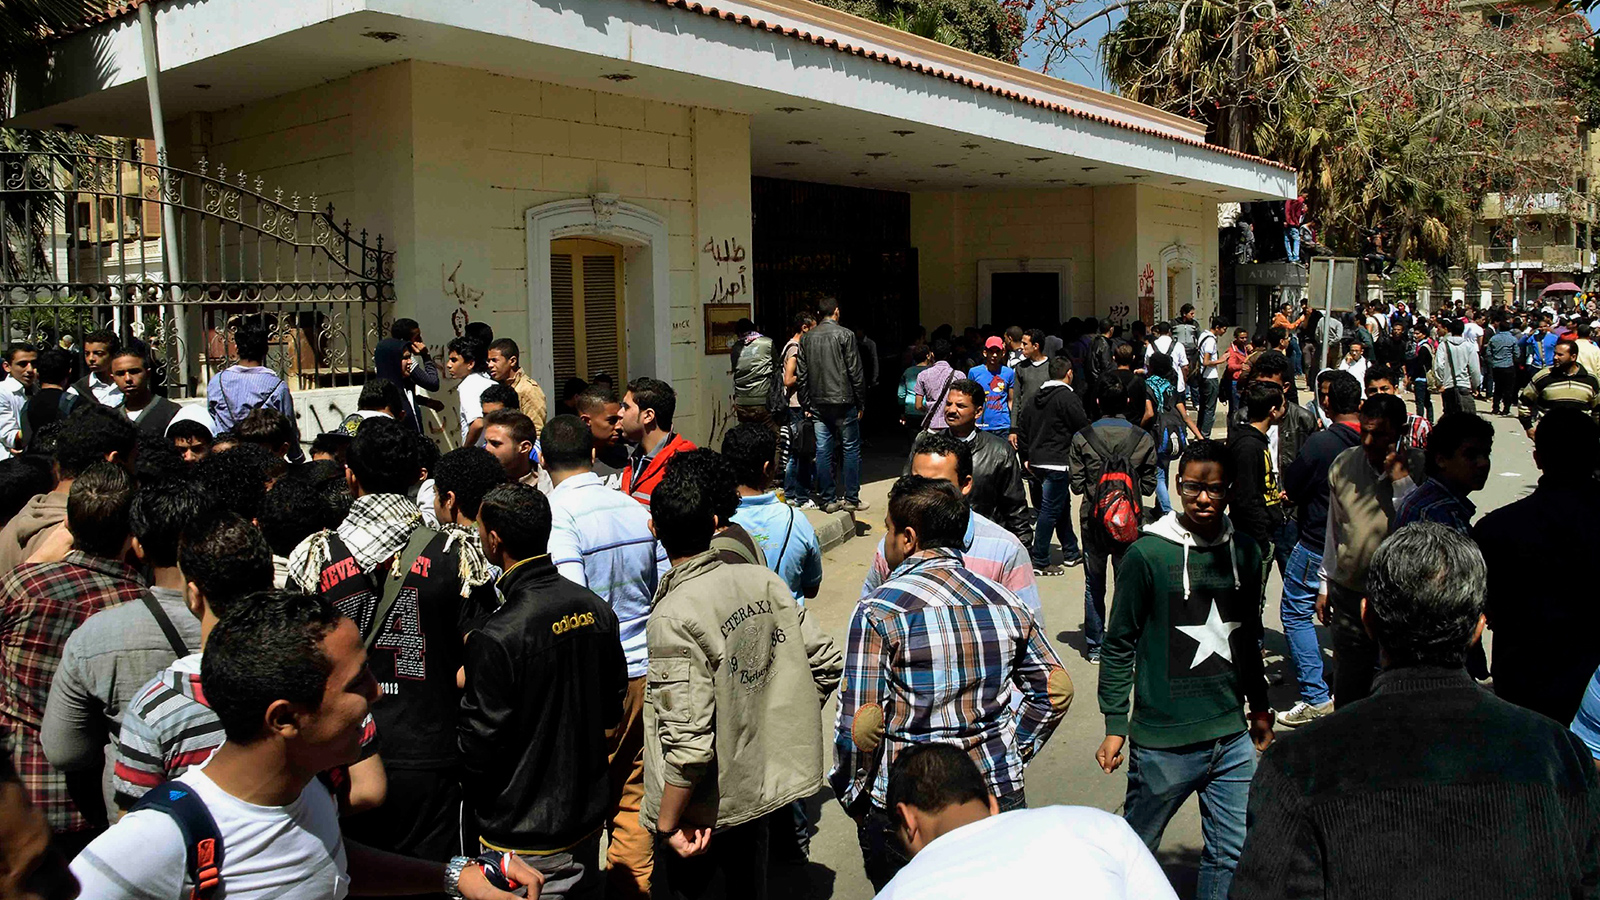 ‪العمل الطلابي في مصر تراجع بانكماش العمل السياسي إثر الانقلاب العسكري في صيف 2013‬ (الجزيرة)